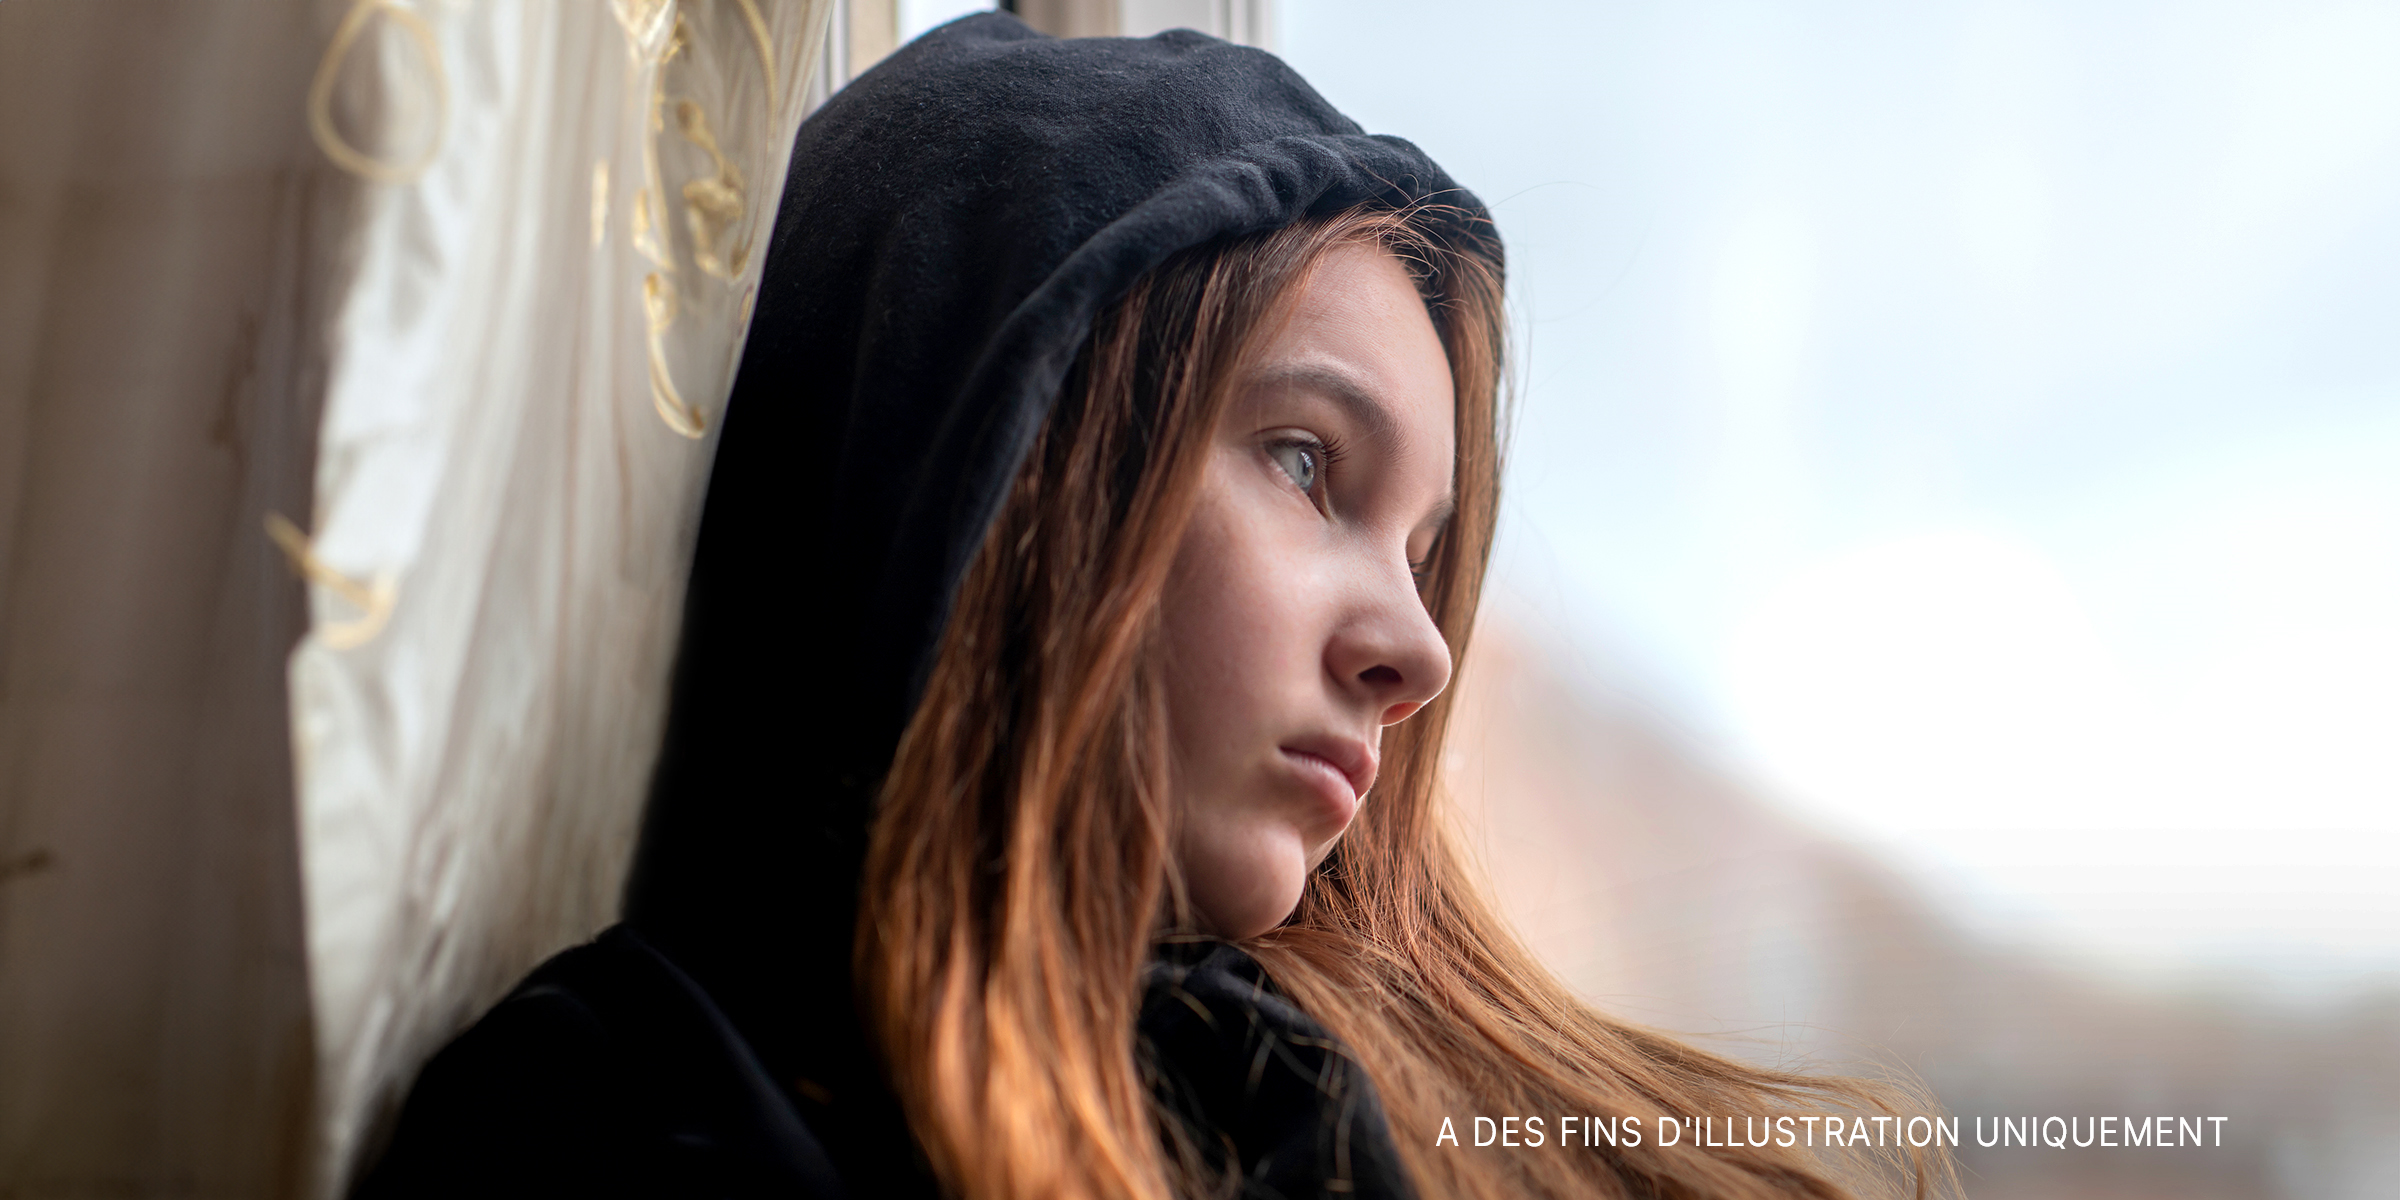 Une adolescente triste regarde par la fenêtre | Source : Shutterstock